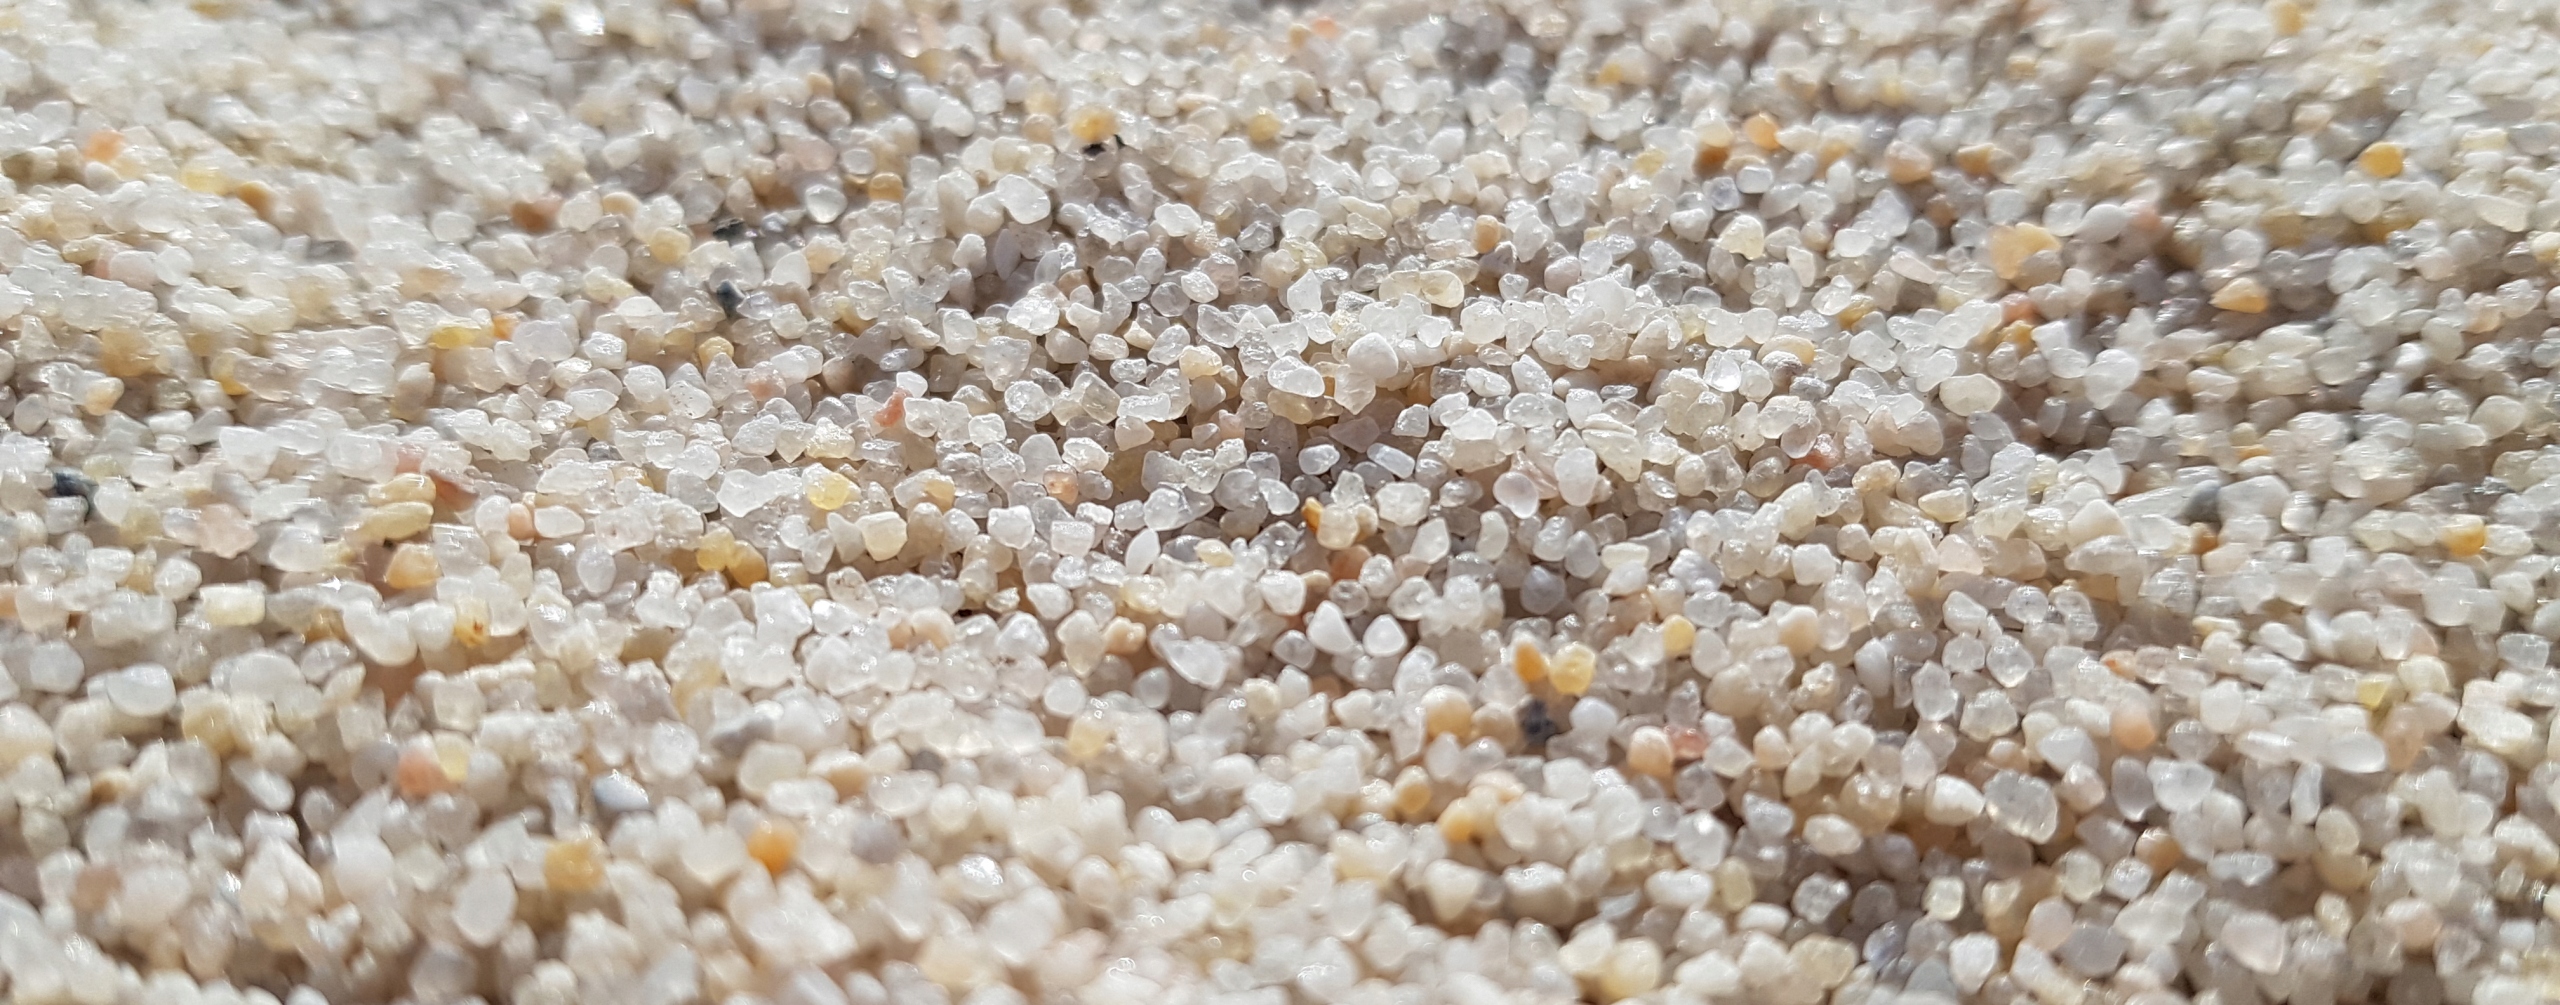 Песок - грунт для аквариума, его виды: кварцевый, белый, речной и черный, а также как промыть и чистить его